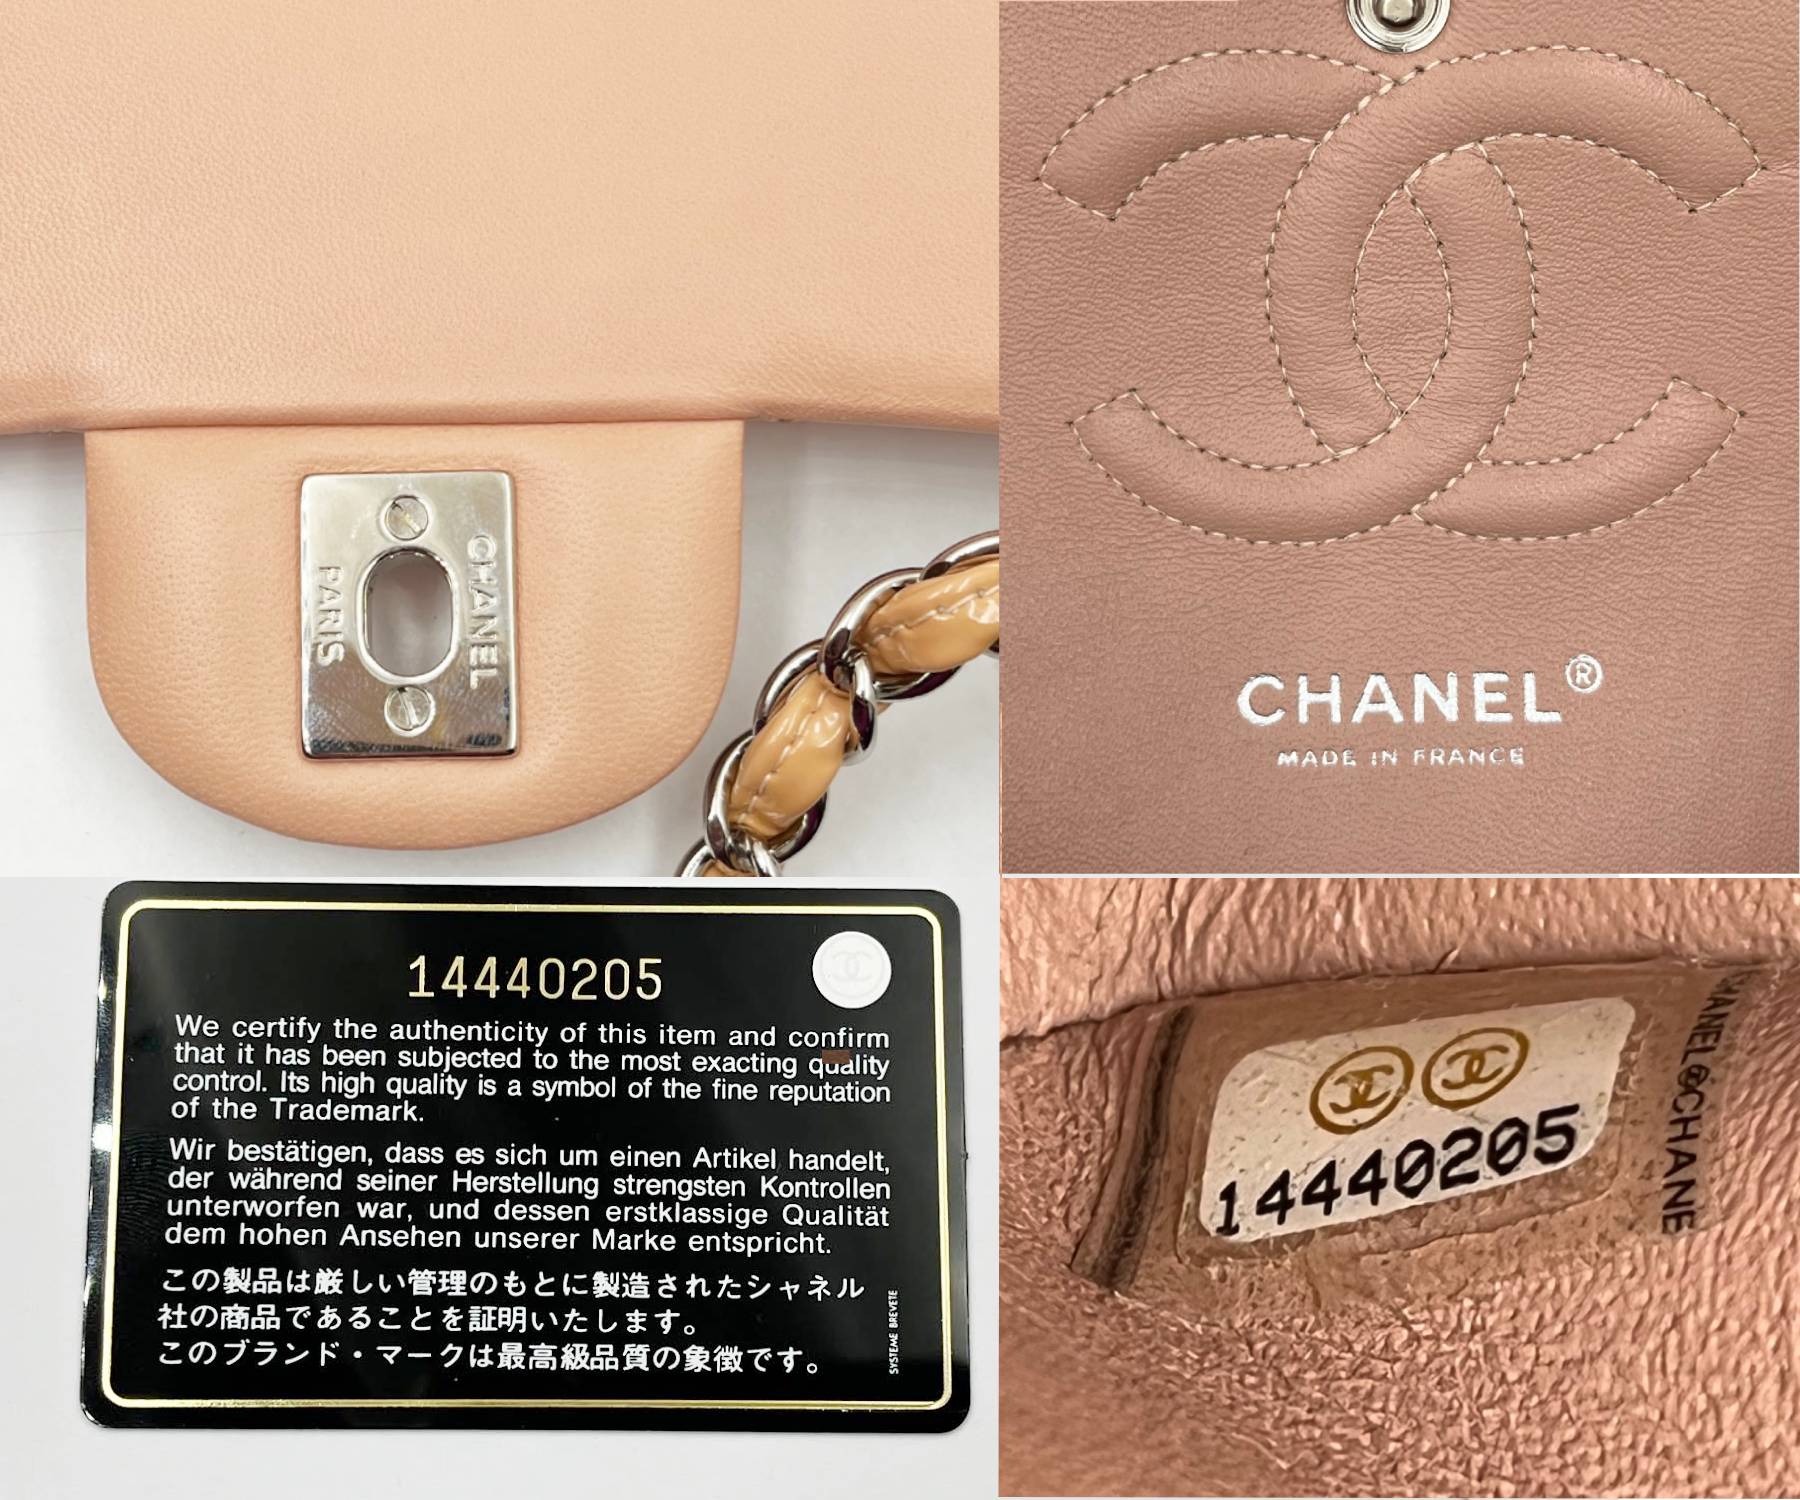 Chanel Vintage Naked Patchwork Flap Bag - White Shoulder Bags, Handbags -  CHA775208